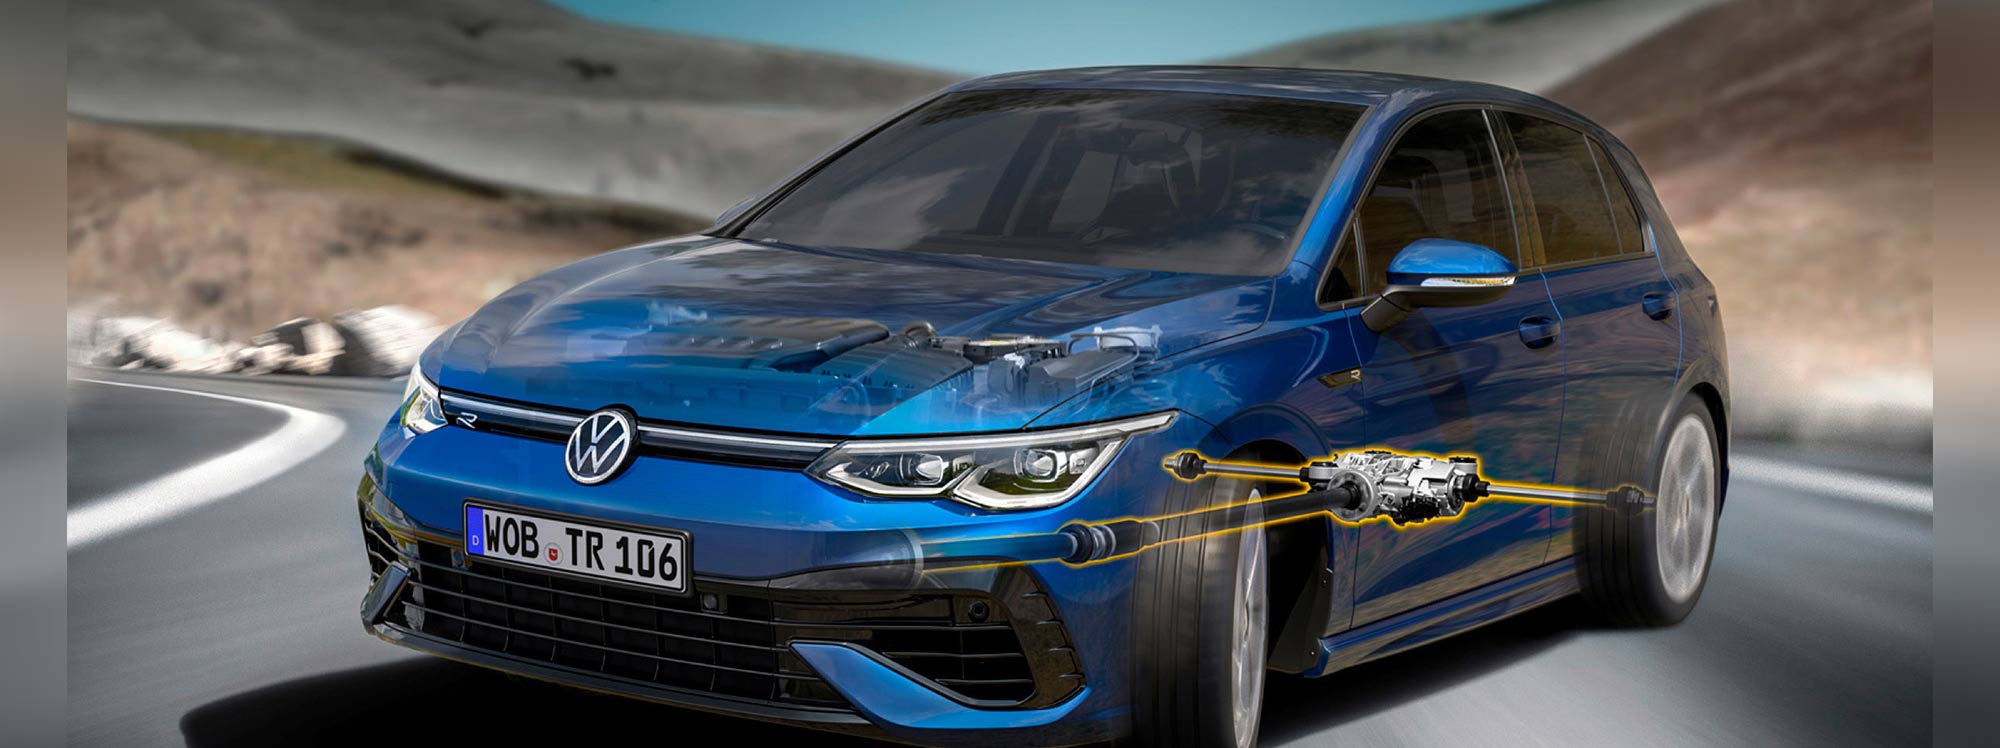 Volkswagen está desarrollando el chasis del futuro